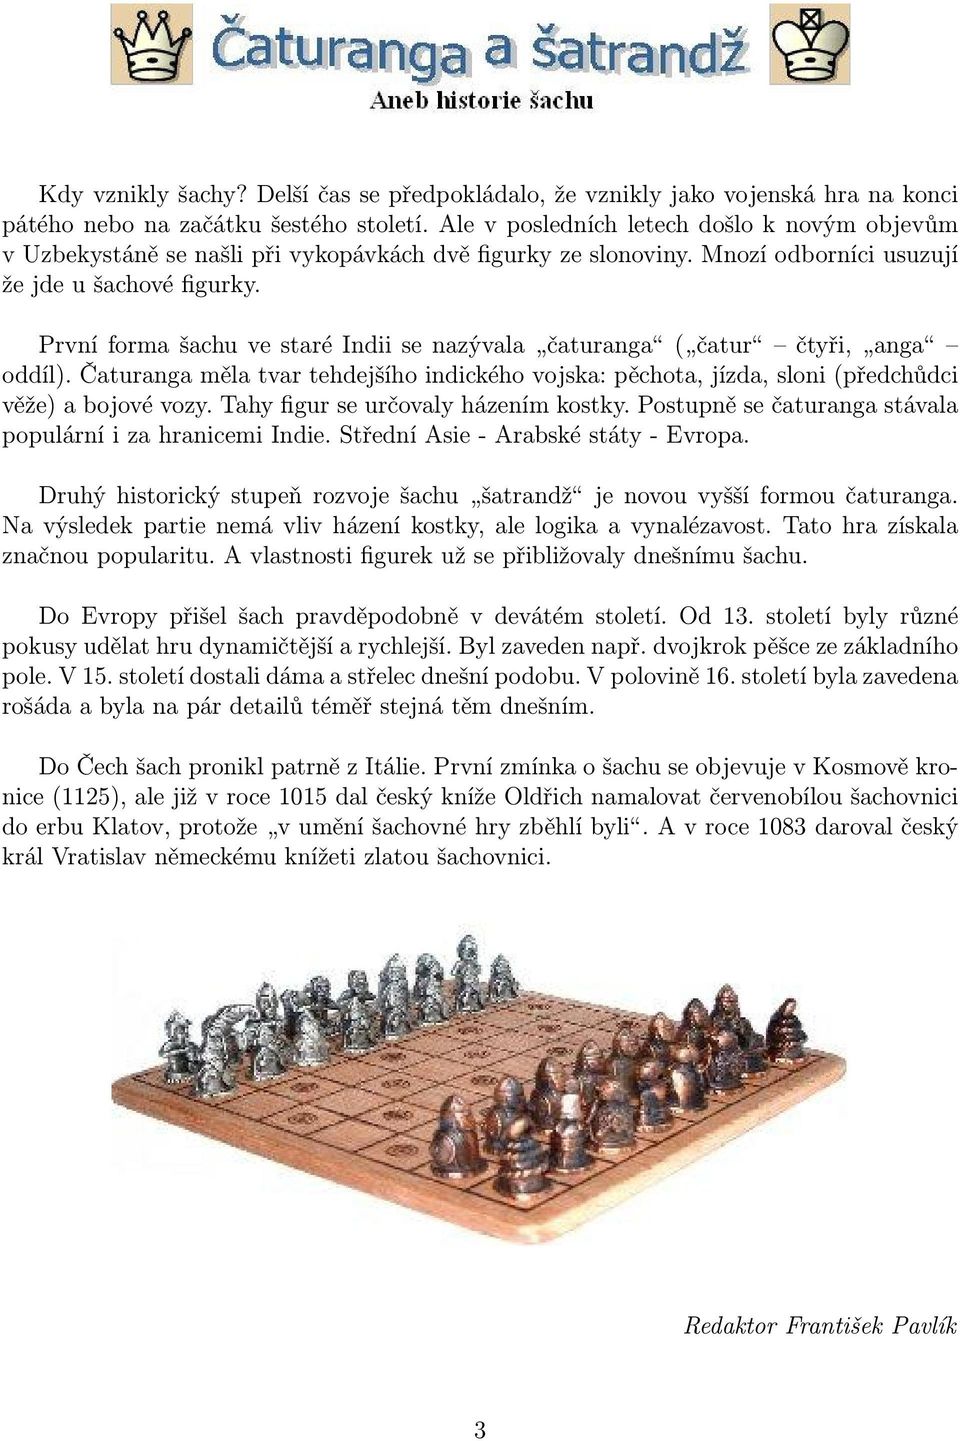 První forma šachu ve staré Indii se nazývala čaturanga ( čatur čtyři, anga oddíl). Čaturanga měla tvar tehdejšího indického vojska: pěchota, jízda, sloni (předchůdci věže) a bojové vozy.